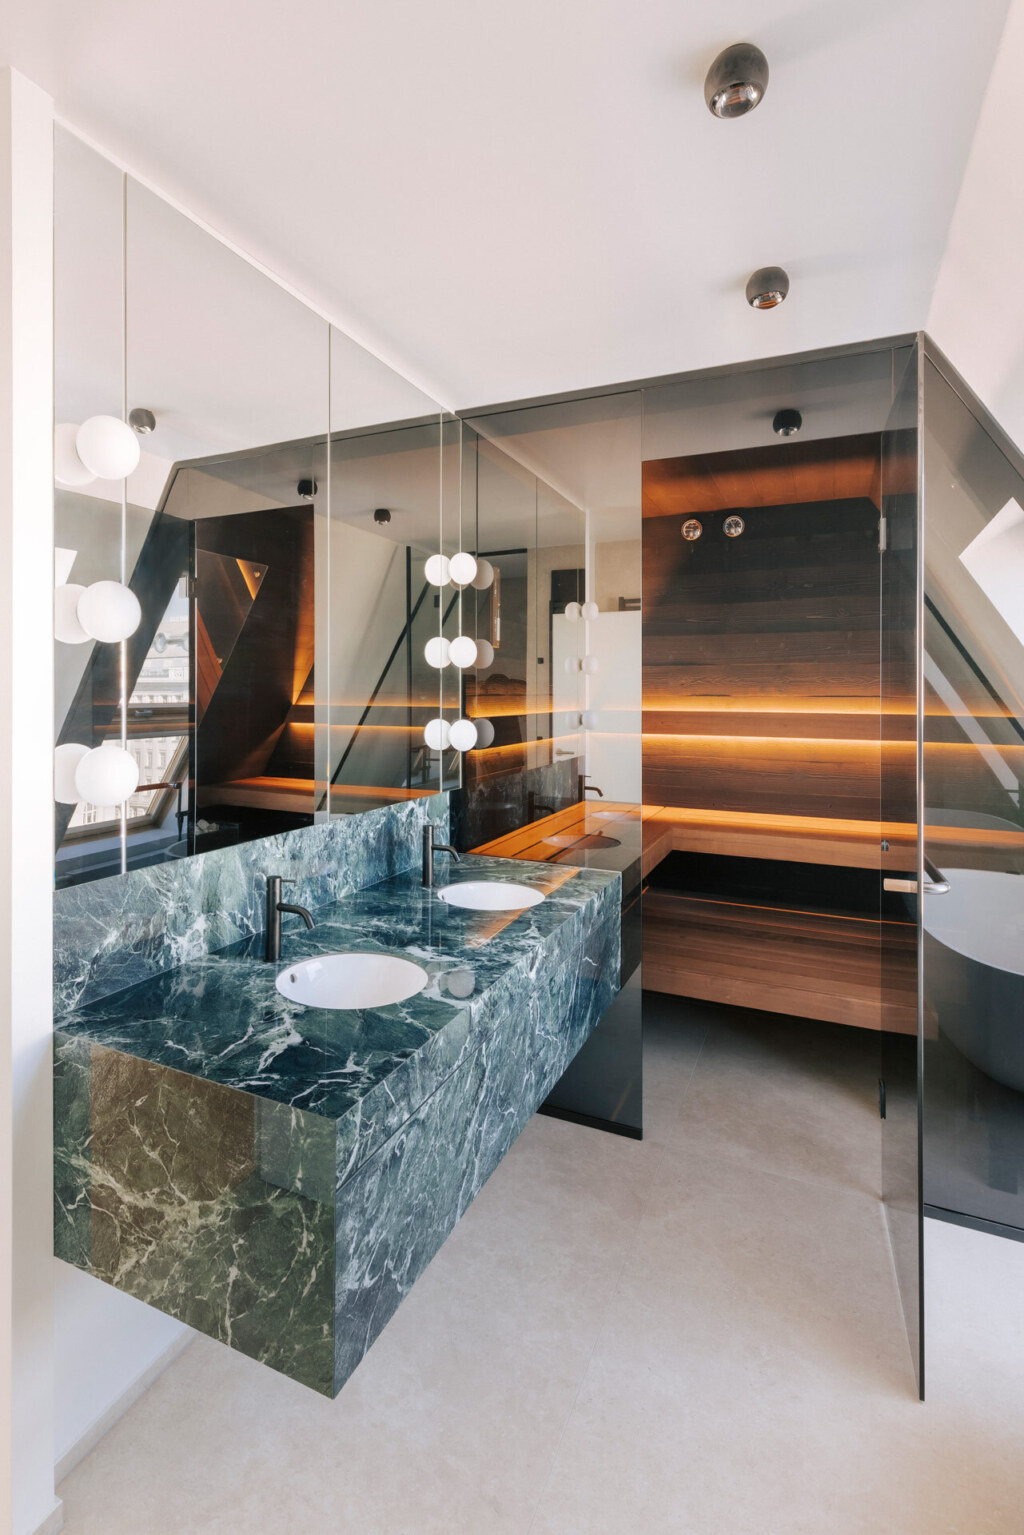 Maßgeschneiderte Sauna in individuellem Design aus dunklen Hölzern, schwarzer Glasfront und mit direkt anschließendem Waschtisch aus grünem Marmor, harmonisch unter einer Dachschräge eines modernen Badezimmers eingebaut.